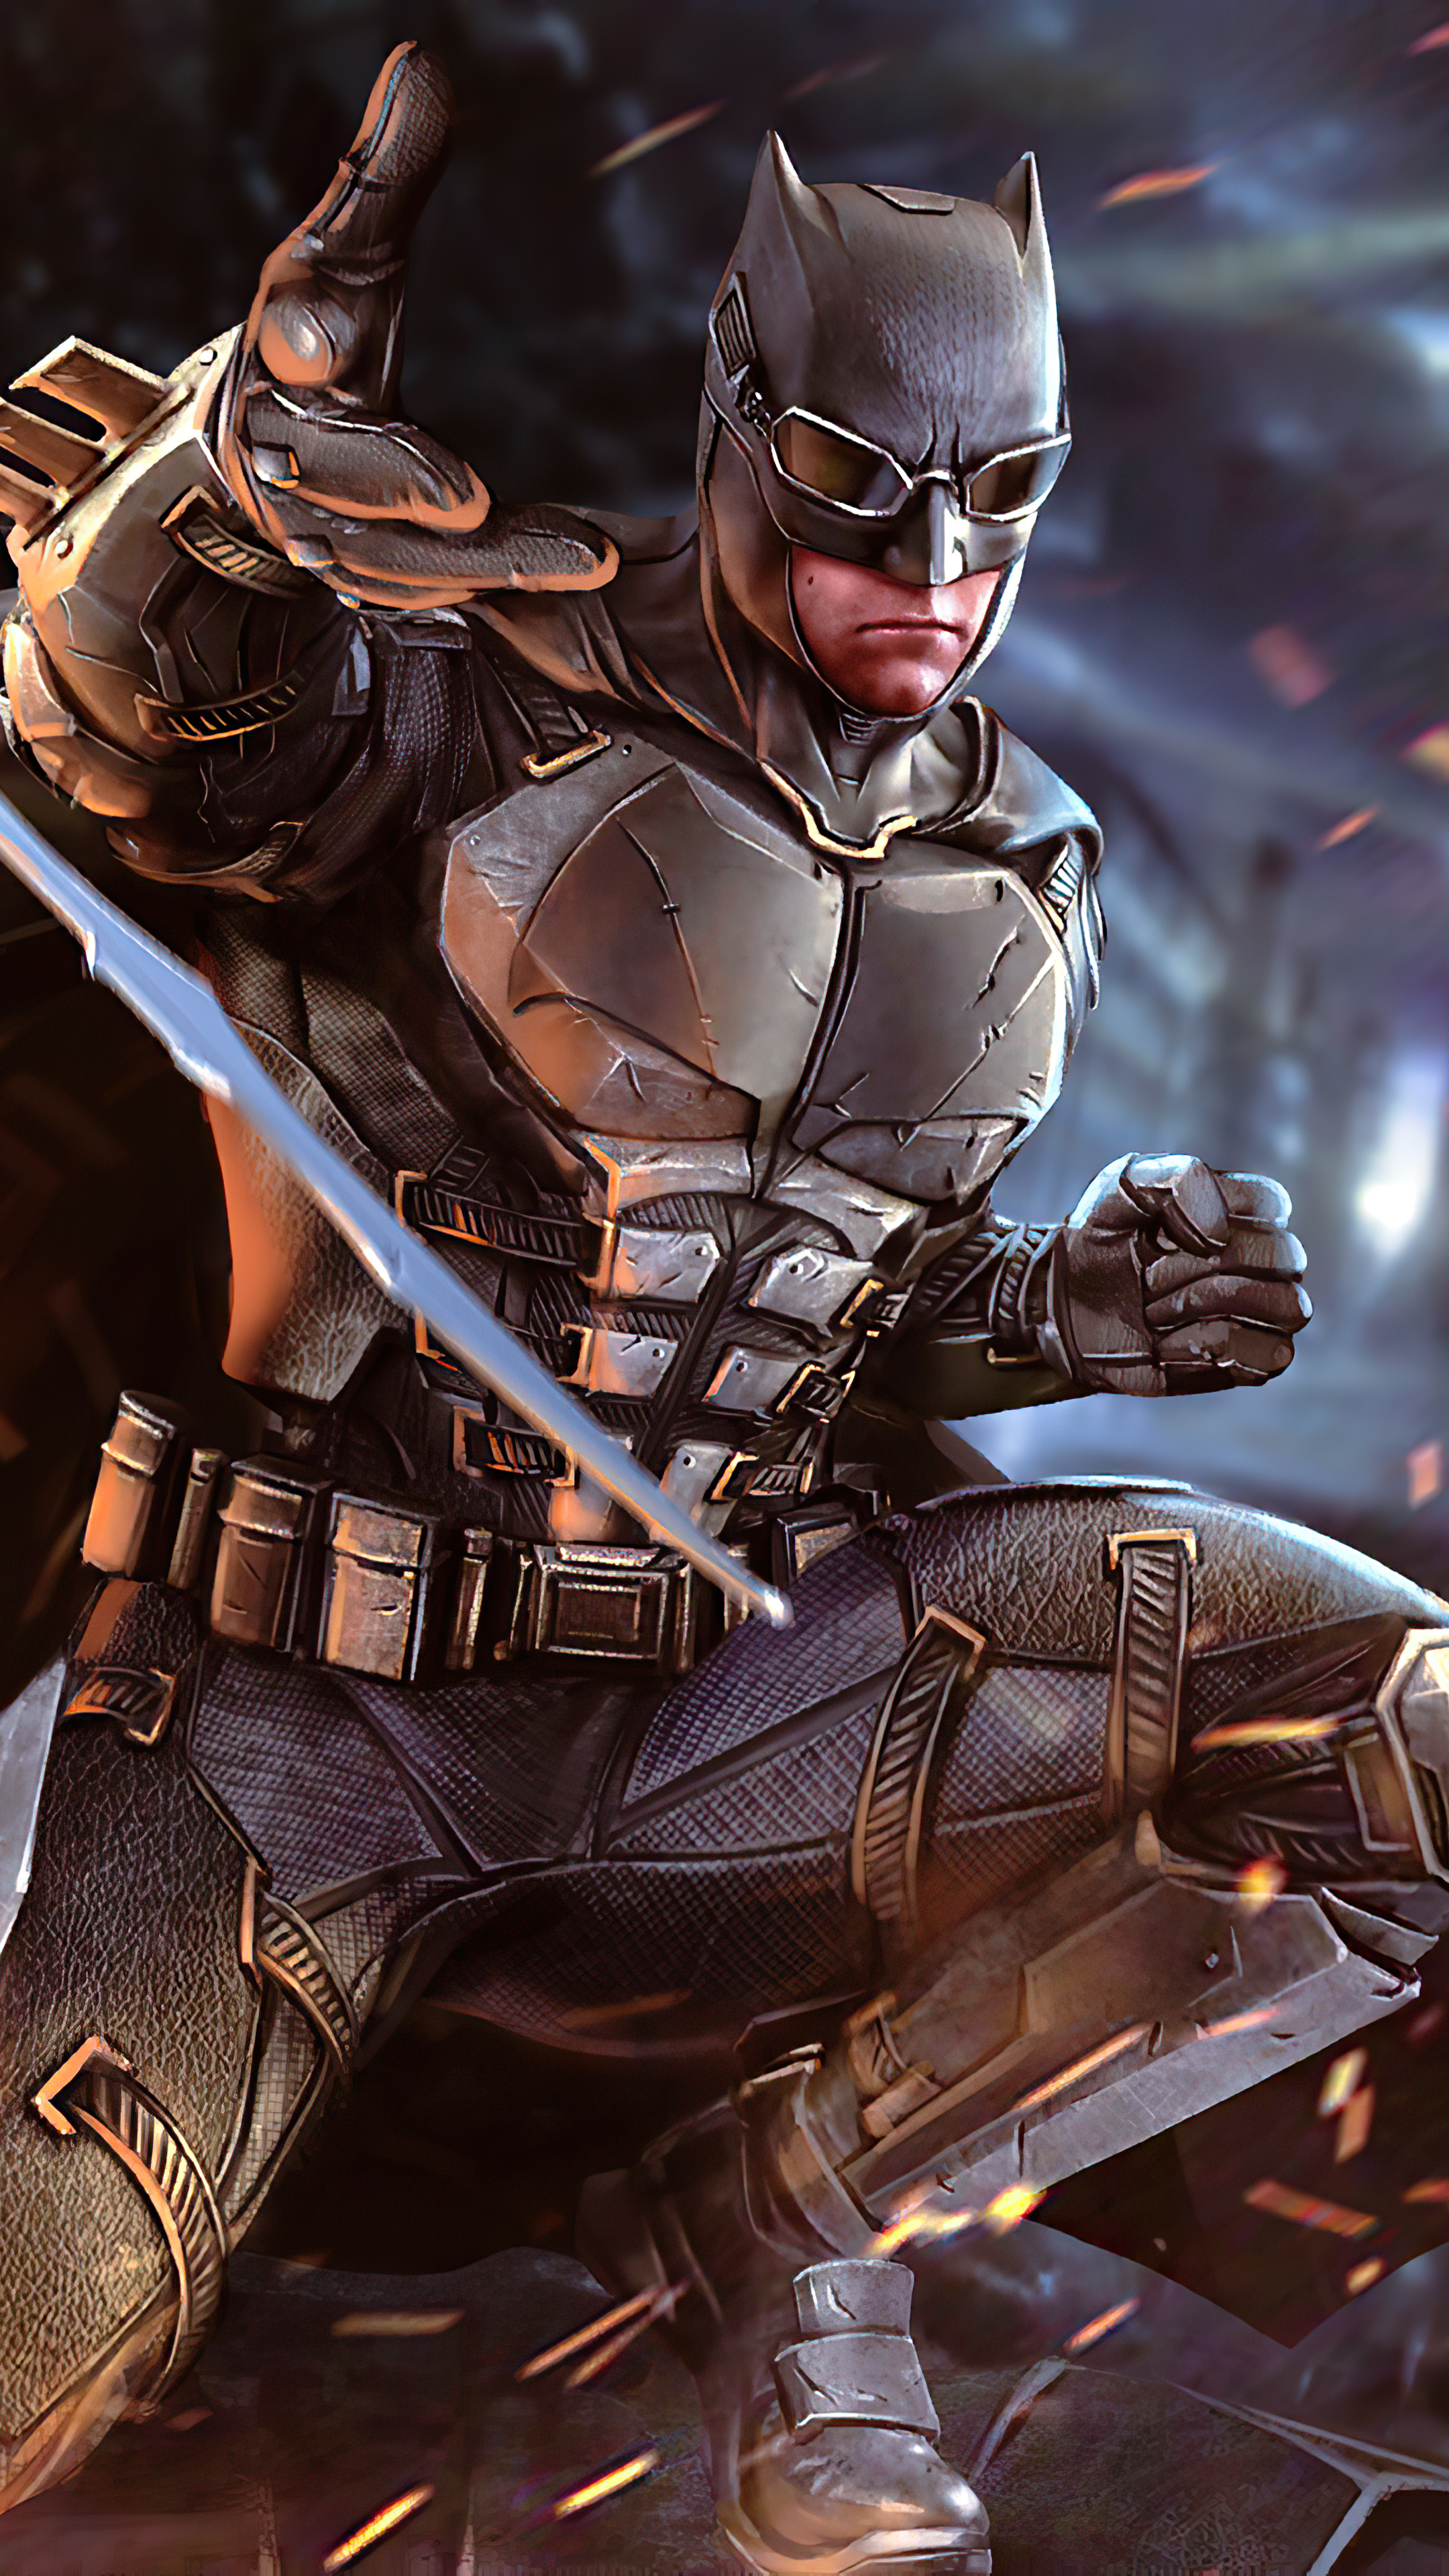 Bạn muốn mang vẻ ngầu, cá tính của siêu anh hùng Batman lên hình nền của mình? Đây là nơi bạn cần đến. Cùng khám phá những hình nền Batman siêu ngầu và tạo nên ấn tượng mạnh mẽ.